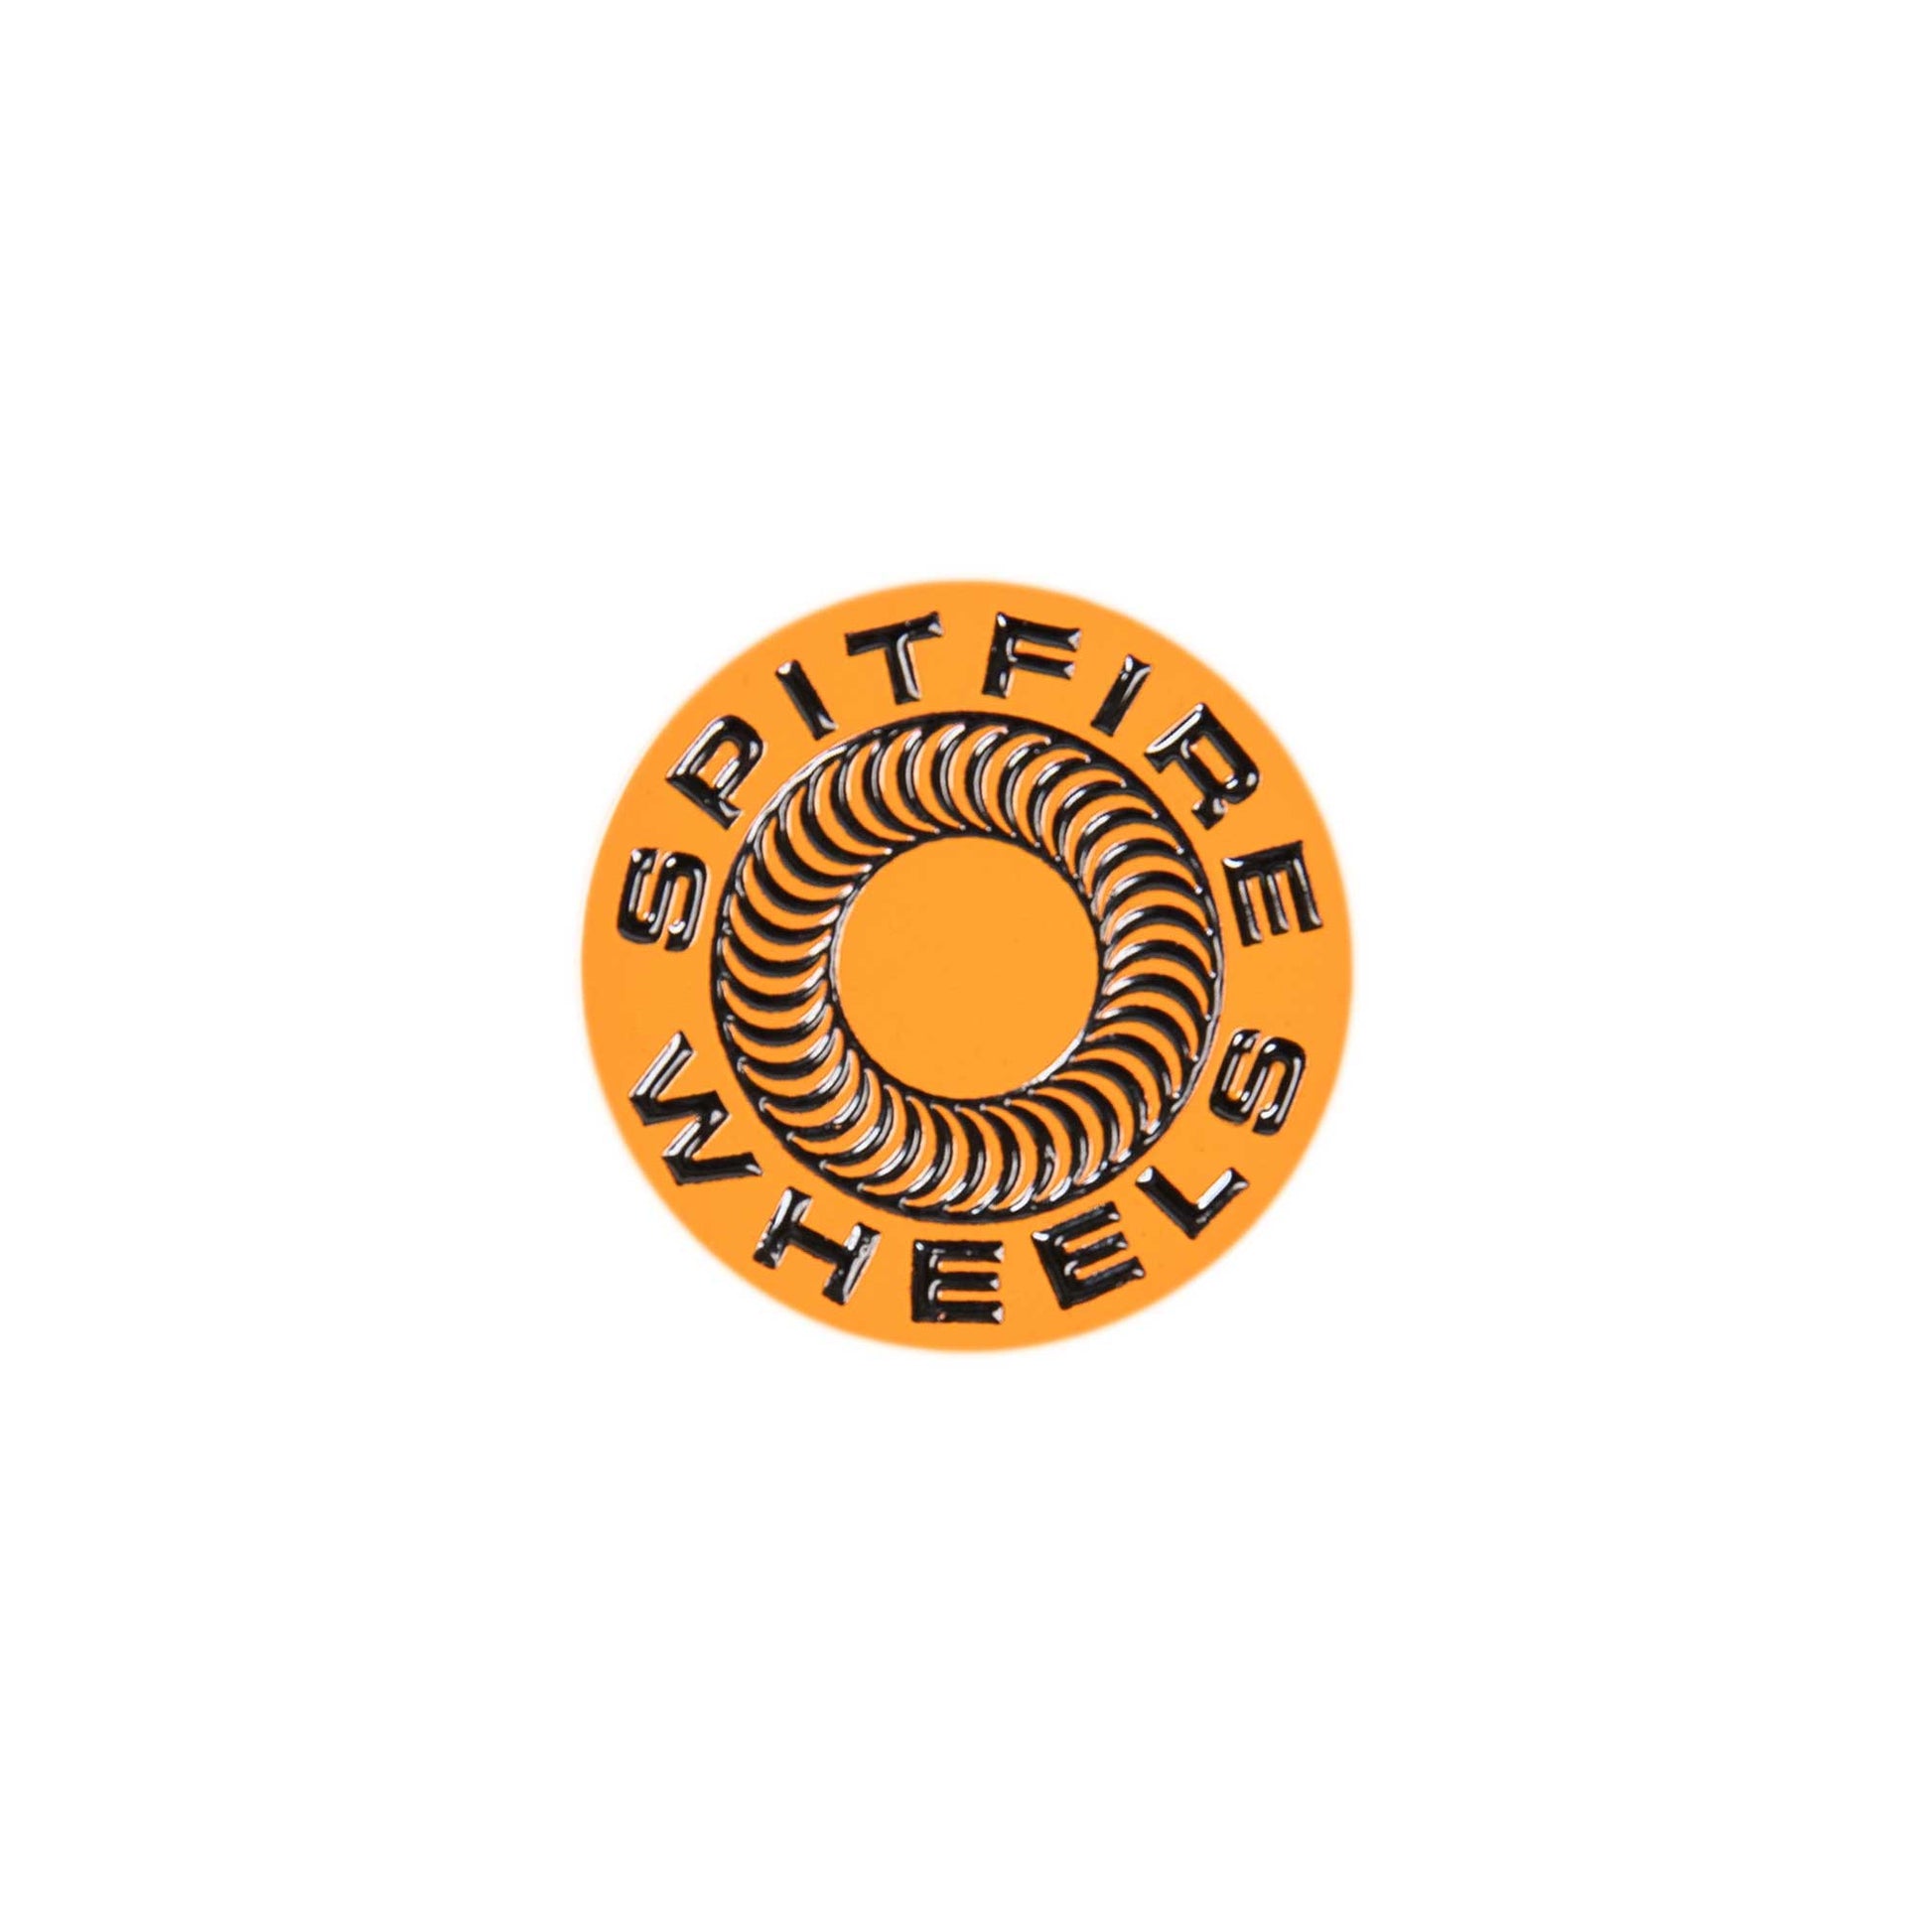 Spitfire Classic Swirl Lapel Pin, orange/black - Tiki Room Skateboards - 1